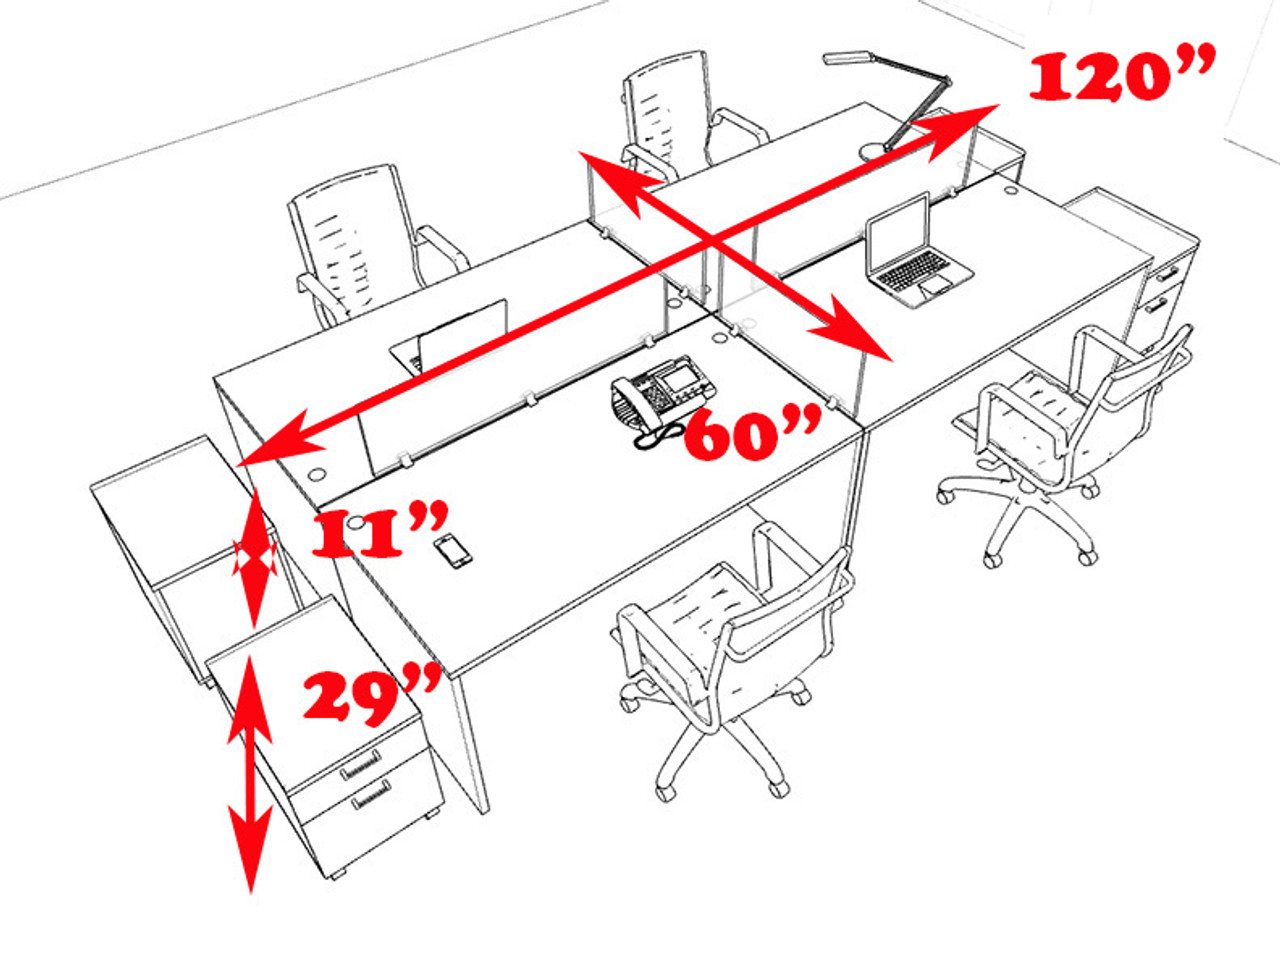 Four Persons Modern Office Divider Workstation Desk Set, #CH-AMB-FP37